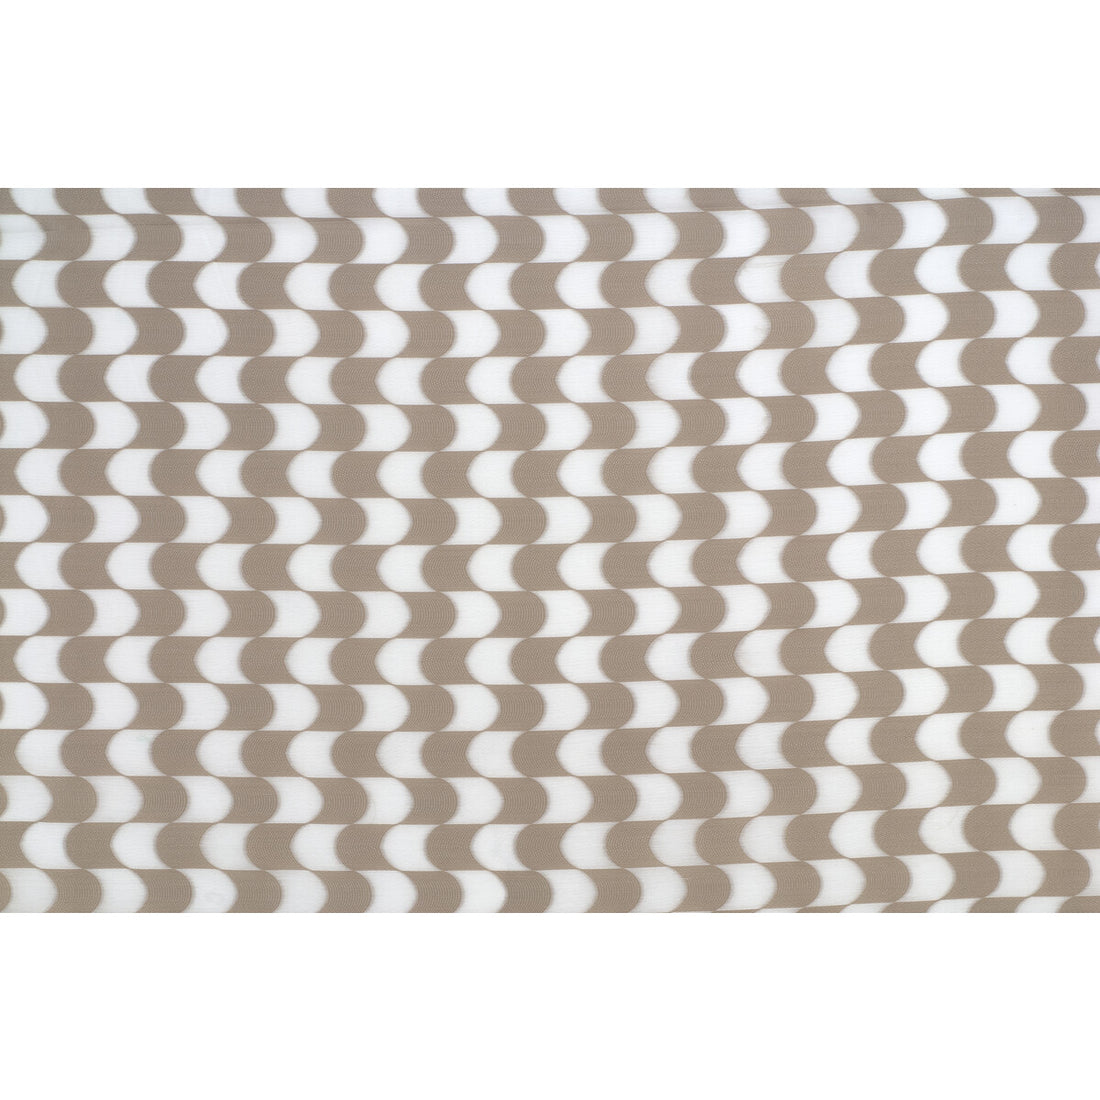 Kravet Basics fabric in 4304-16 color - pattern 4304.16.0 - by Kravet Basics